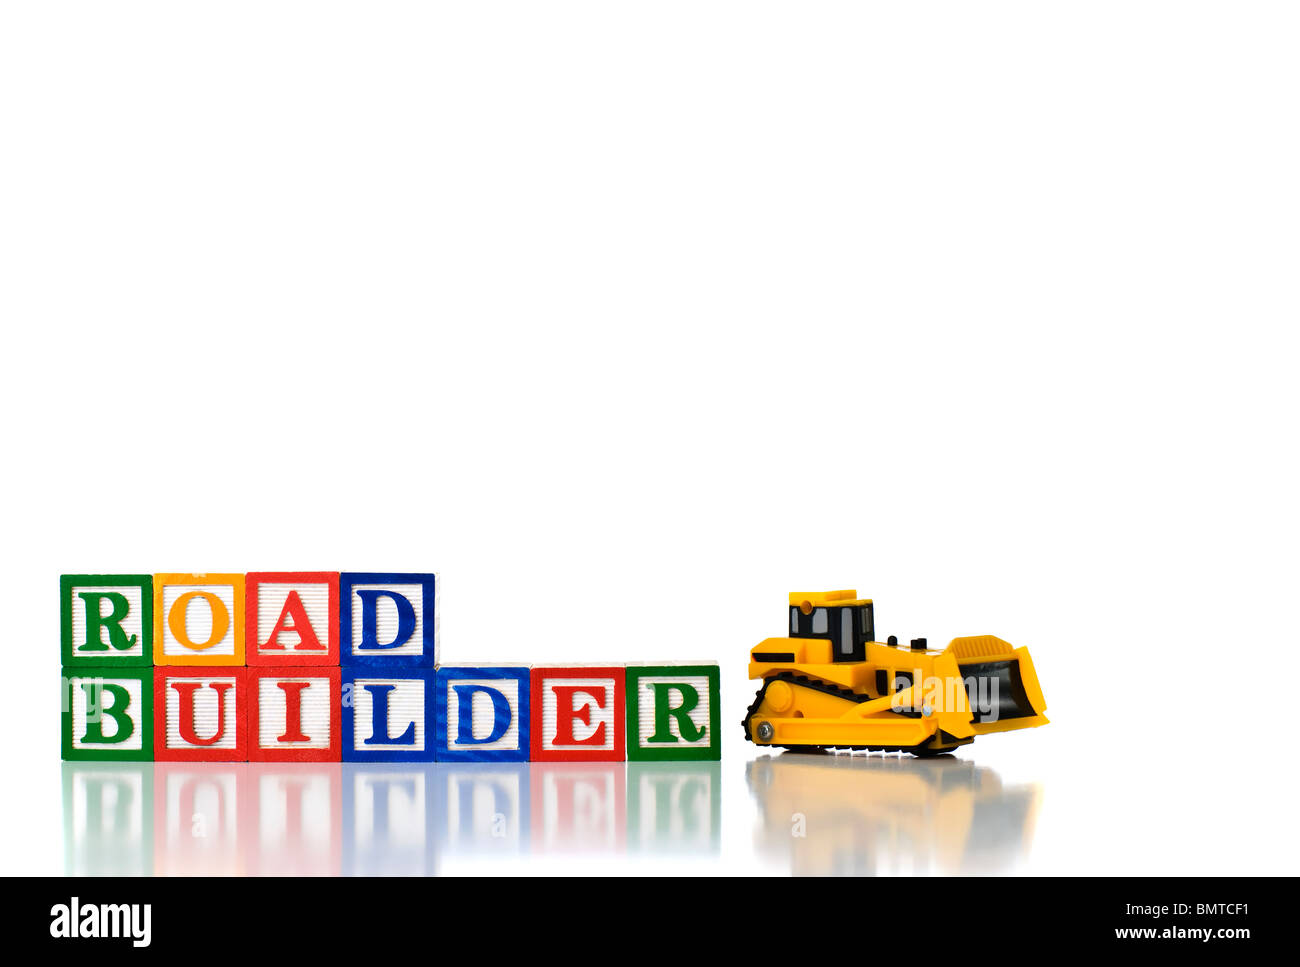 Enfants colorés blocks spelling ROAD BUILDER avec bulldozer modèle Banque D'Images